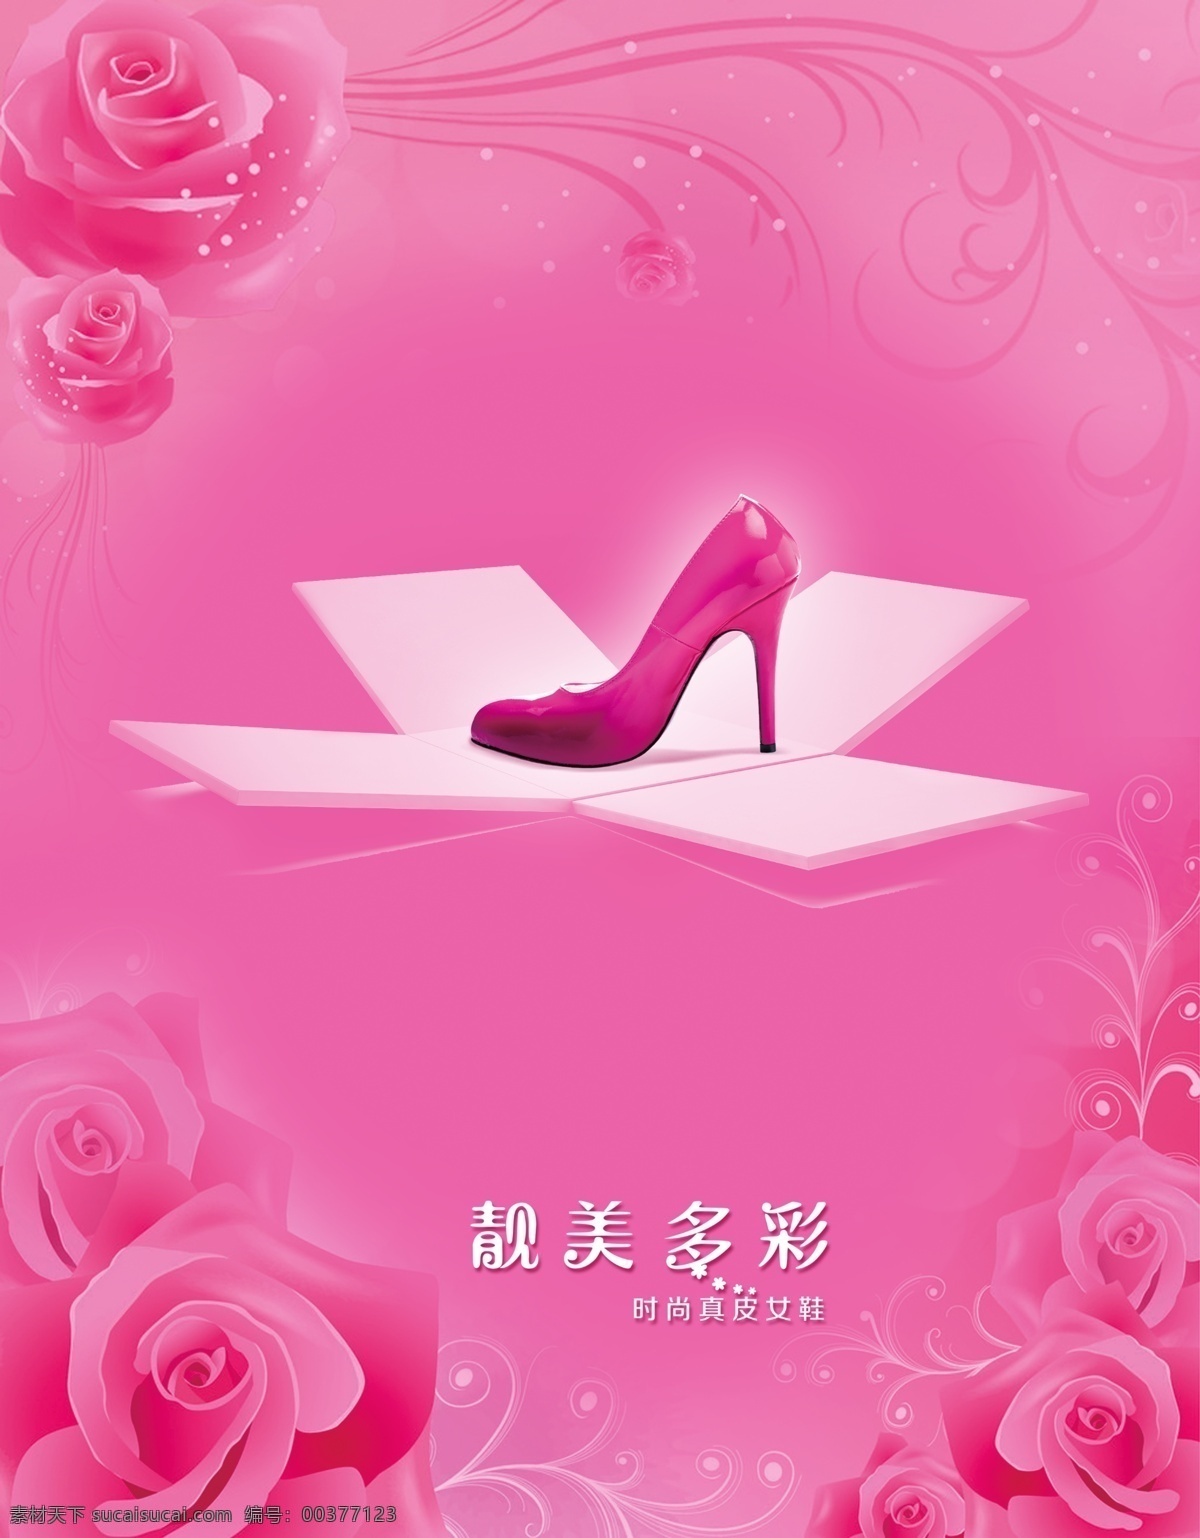 玫瑰 背景 鞋子 广告 粉红色背景 花 礼盒 靓美多彩 单鞋 女鞋广告 粉色